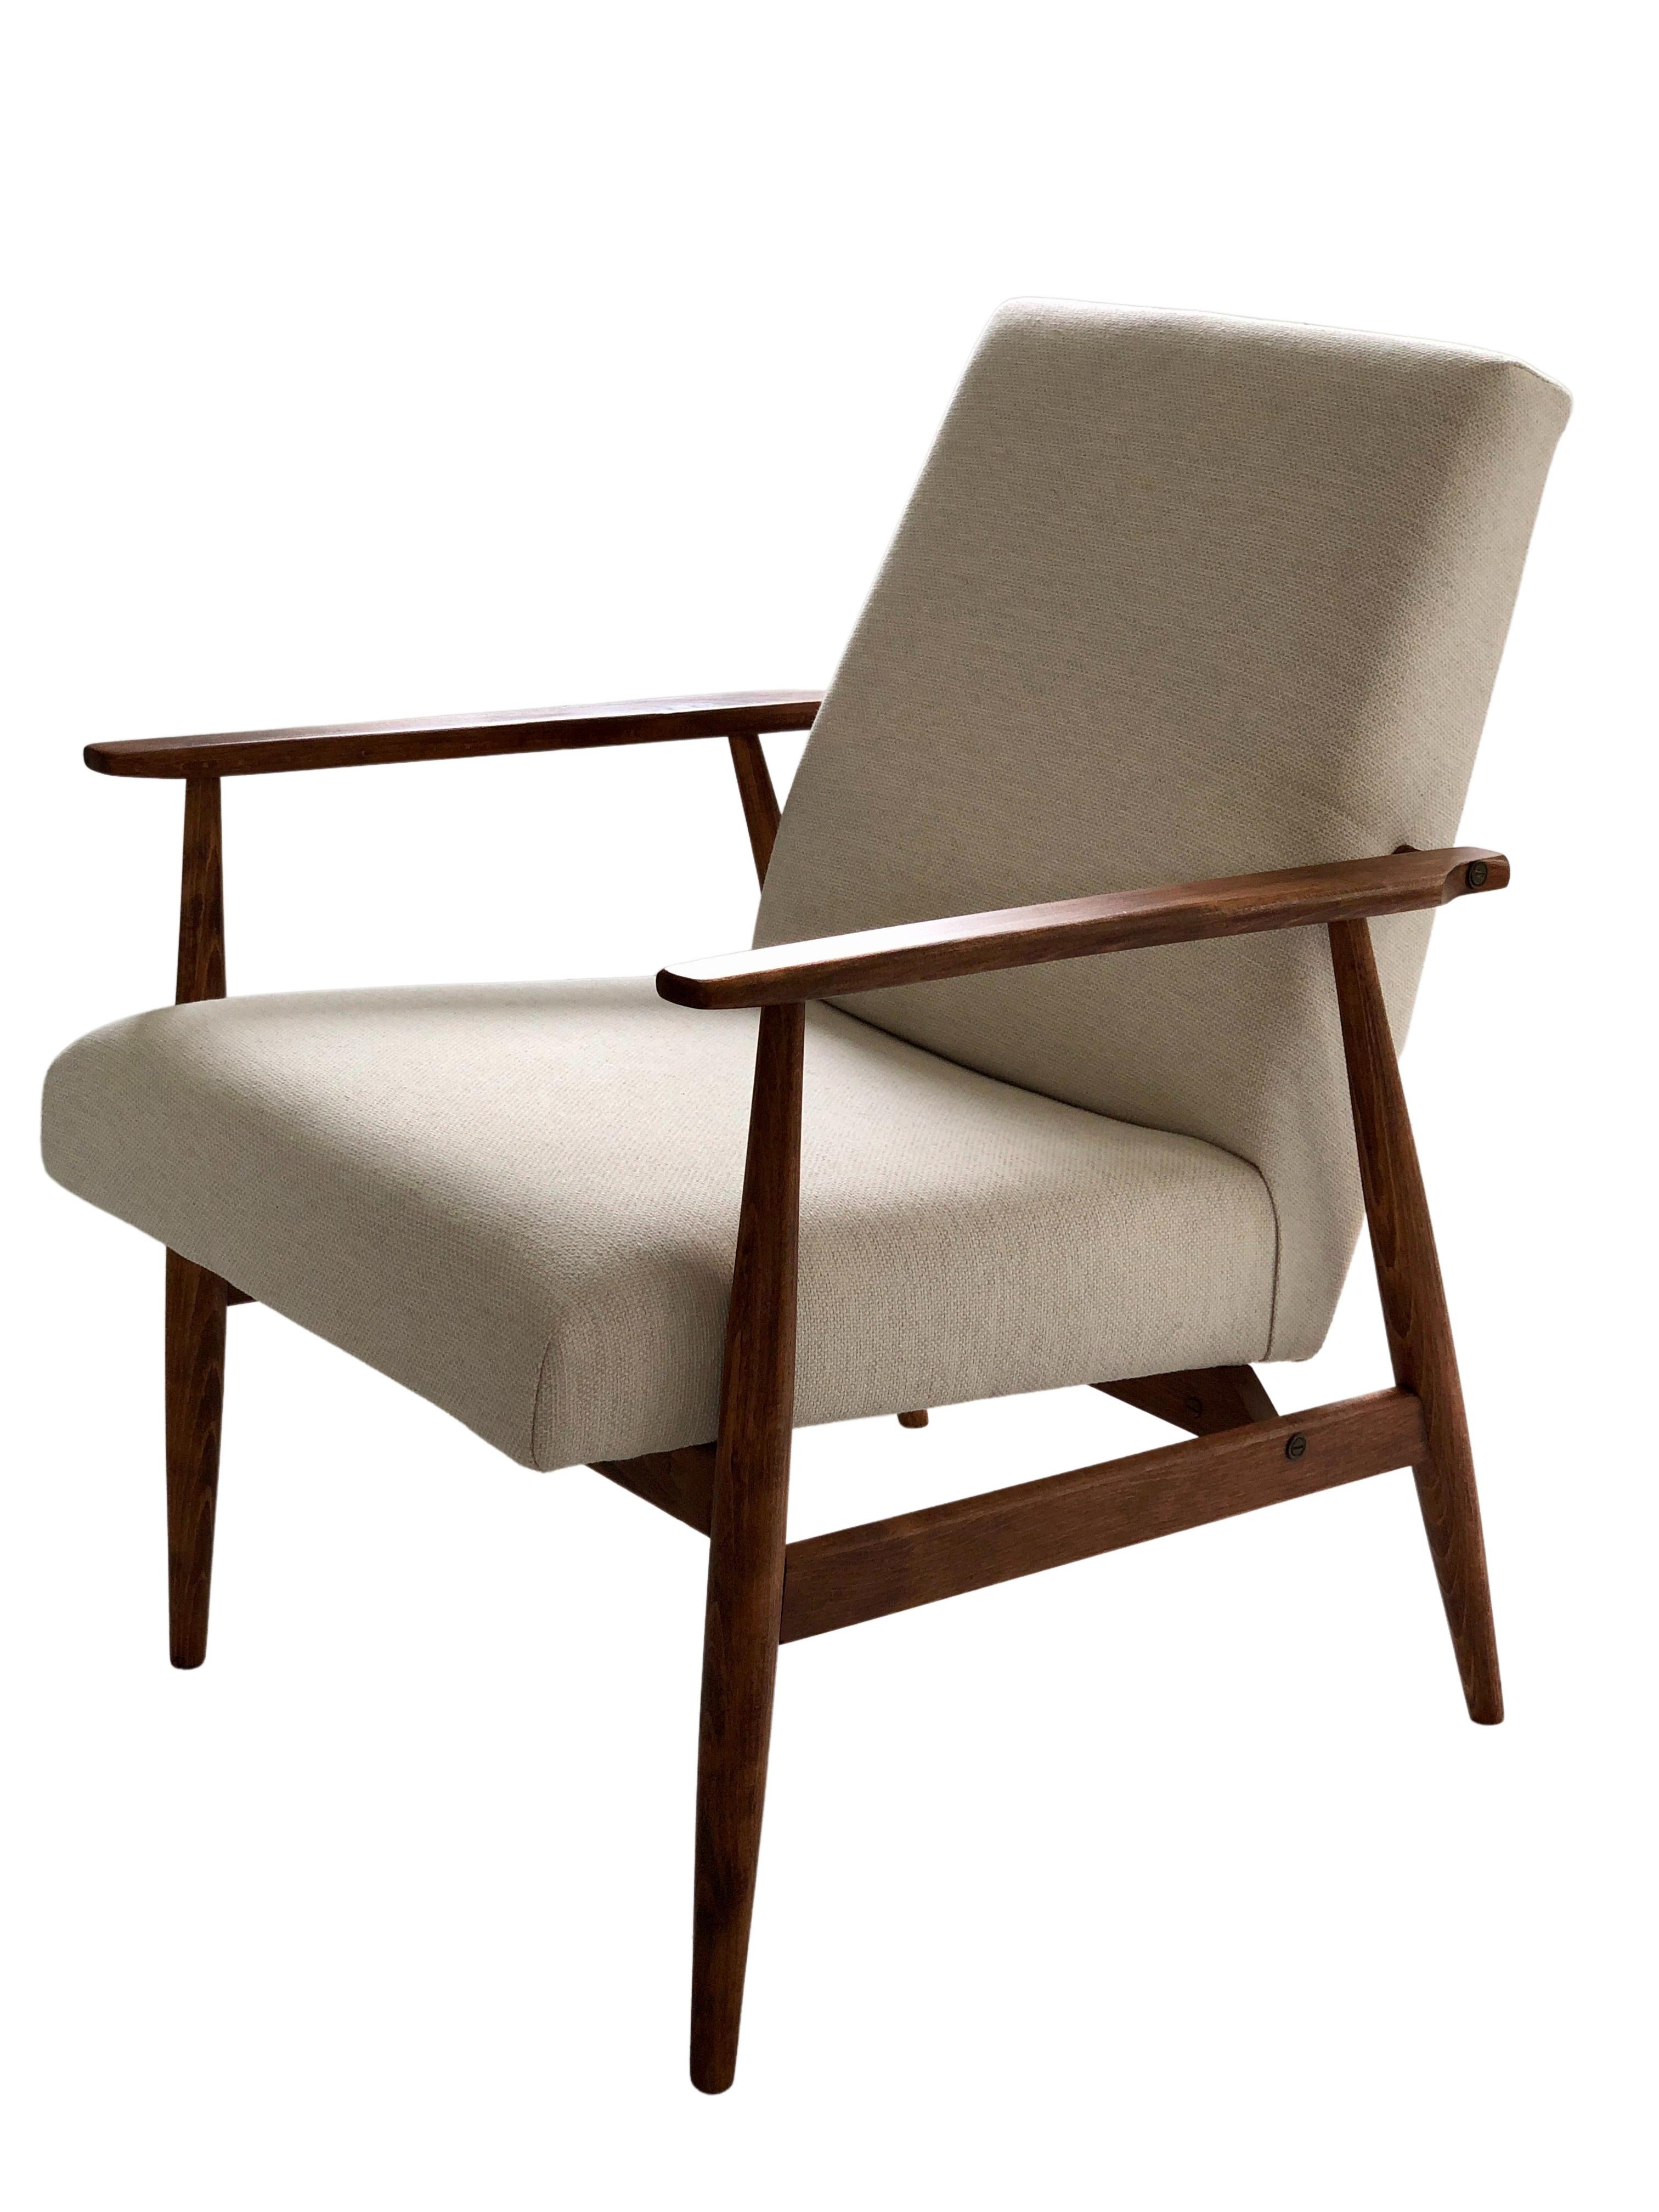 Le fauteuil conçu par Henryk Lis. La structure est en bois de hêtre de couleur noyer chaud, finie avec un vernis satiné semi-mat. Le revêtement est un tissu de coton naturel de haute qualité et de poids élevé, de couleur beige. Le fauteuil a été